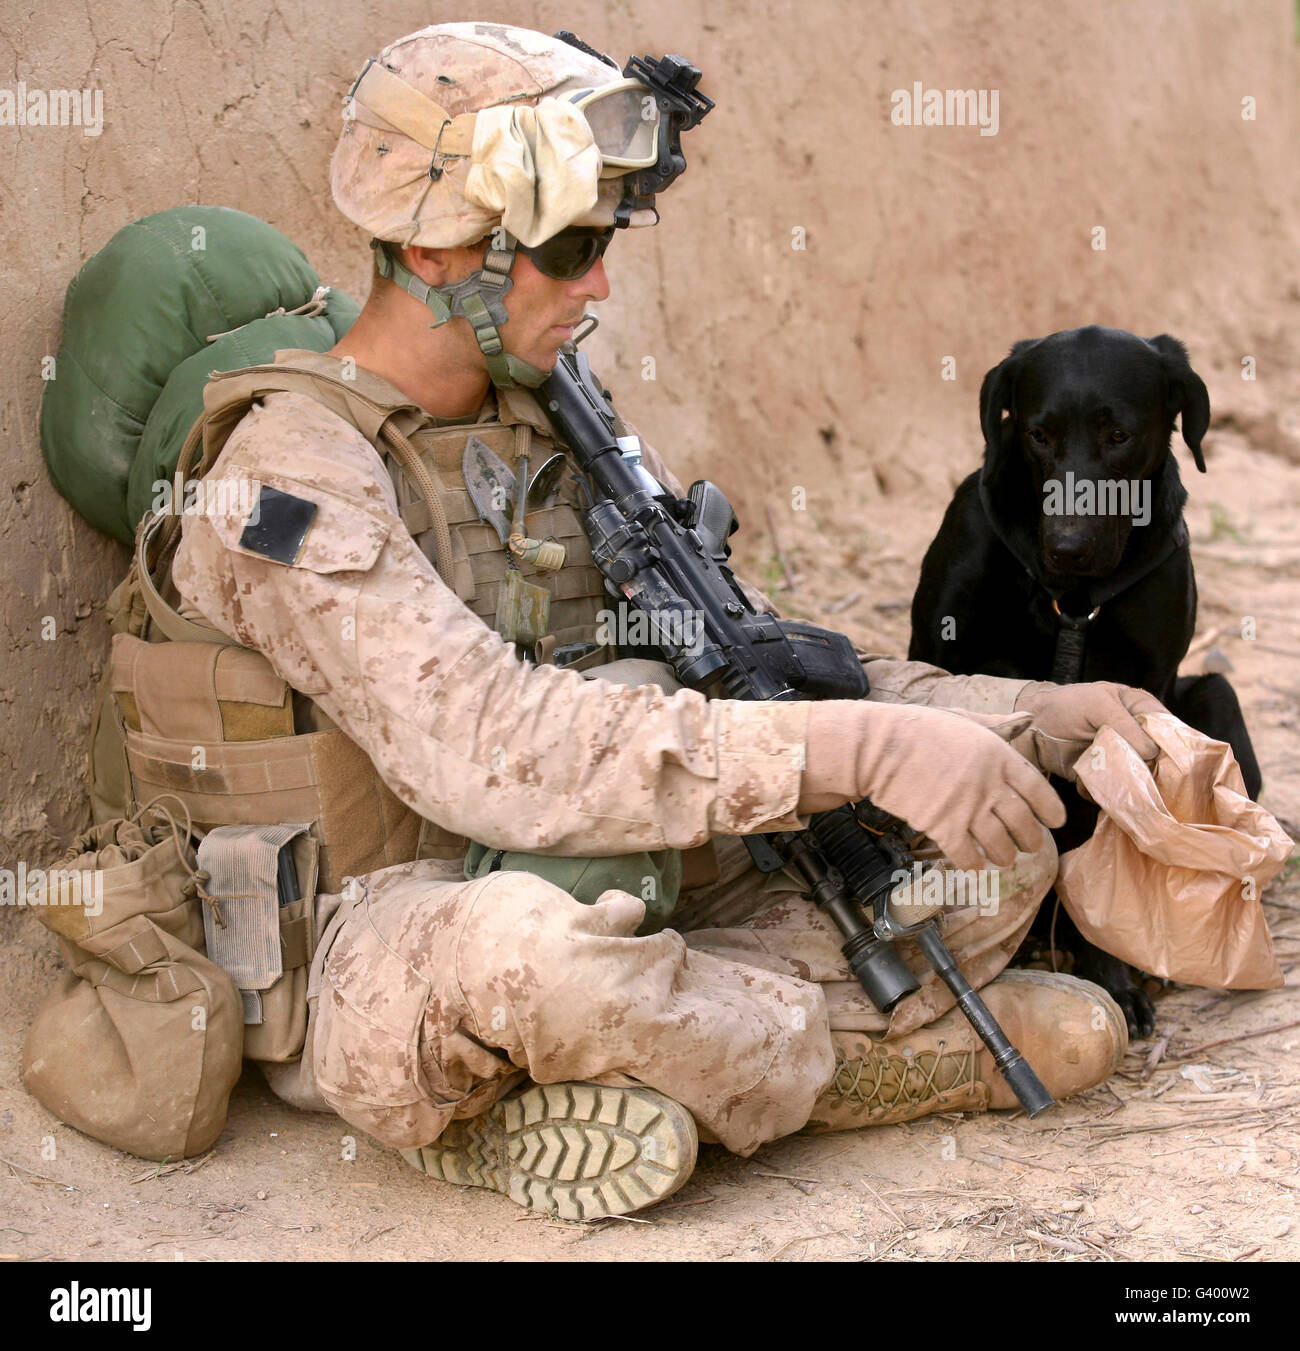 Ein Hundeführer gibt seinem Hund während einer Patrouille in Afghanistan Wasser. Stockfoto